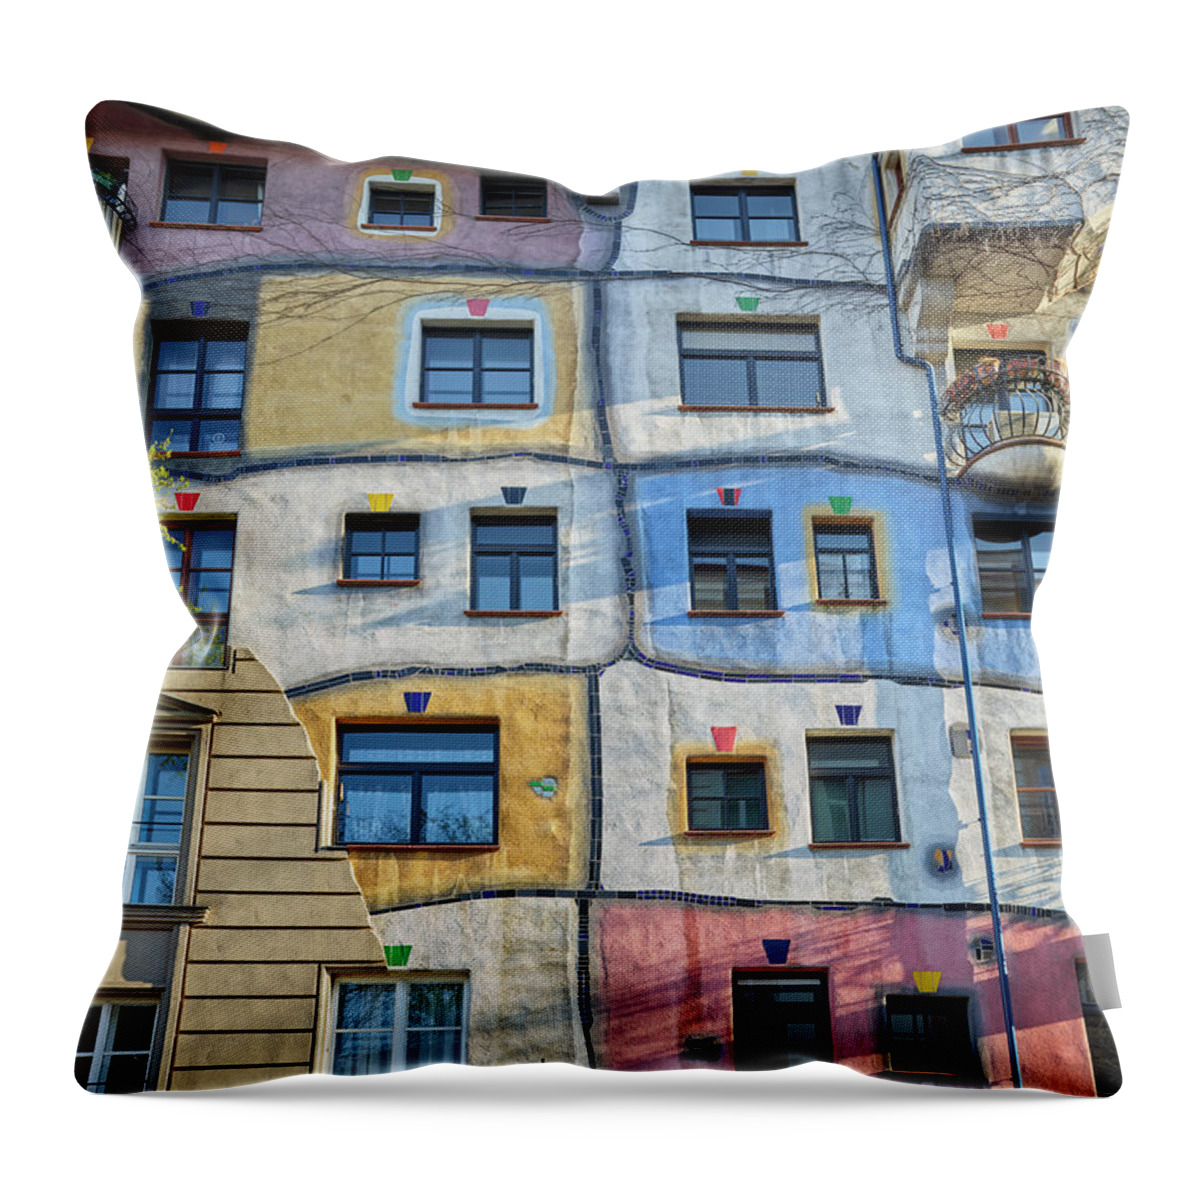 Estock Throw Pillow featuring the digital art Austria, Vienna, Hundertwasser Haus, Hundertwasser House by Rainer Mirau